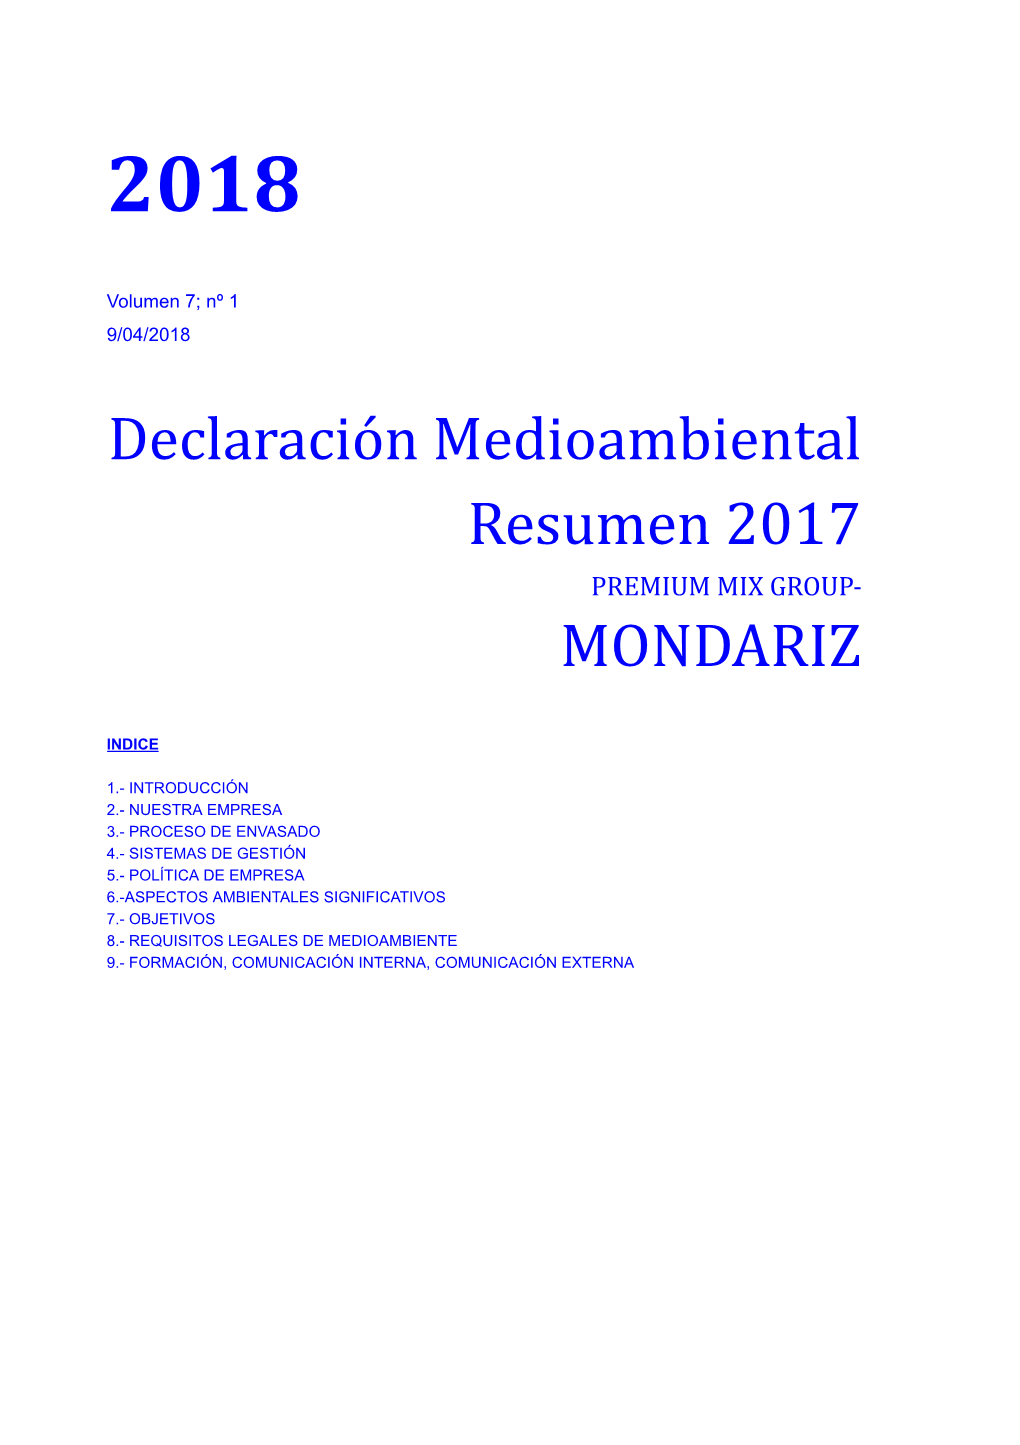 Declaración Medioambiental Resumen 2017